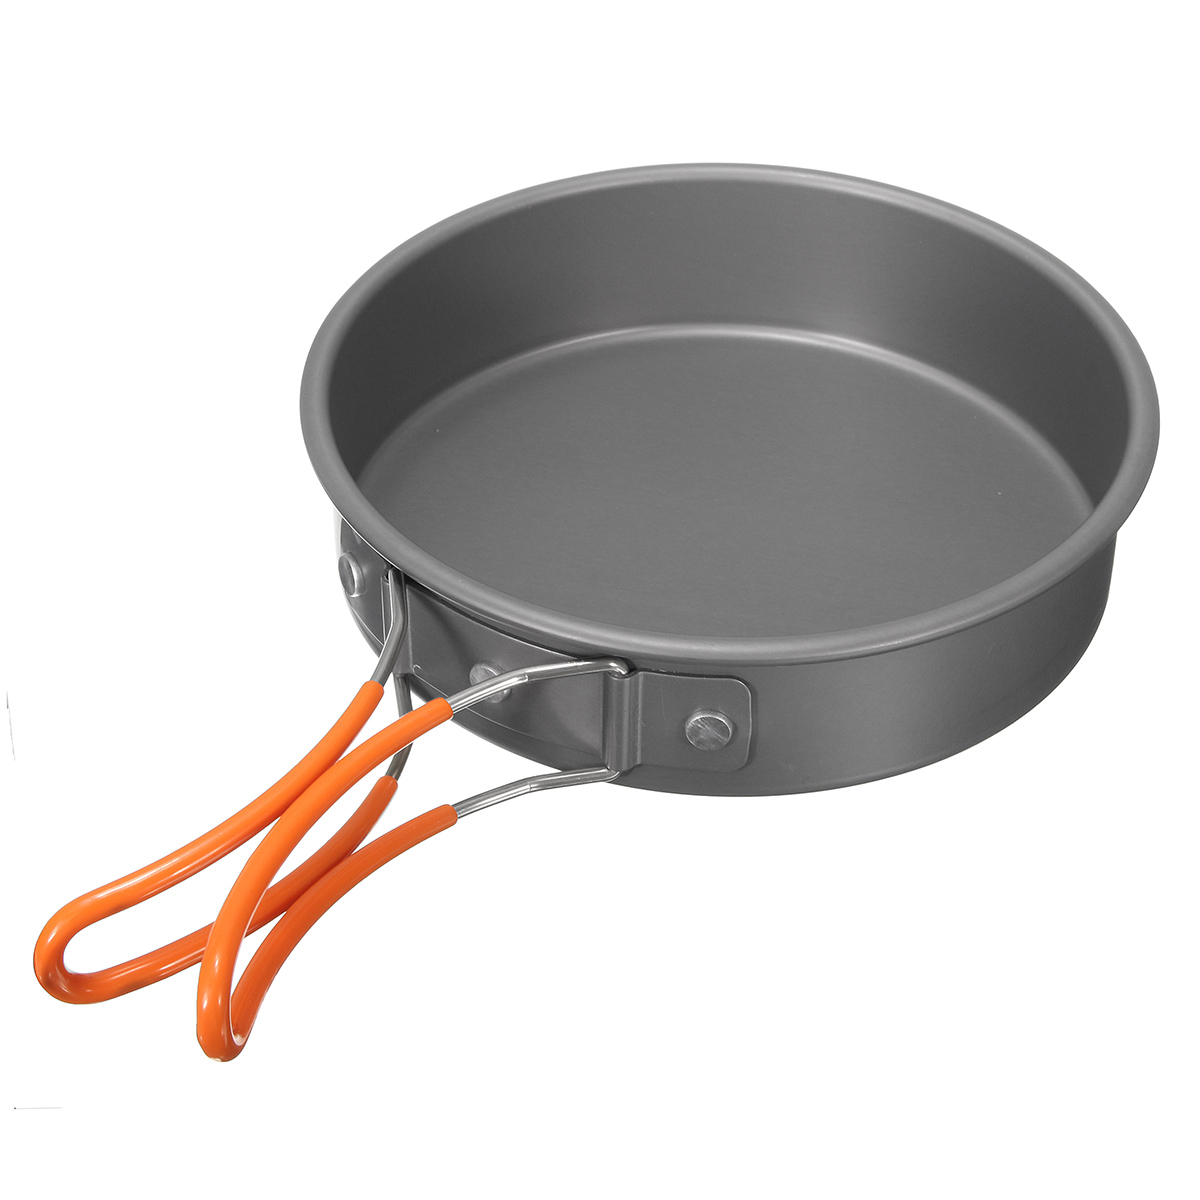 8Pcs-Camping-Aluminum-Pot-Bowl-Portable-Outdoor-Picnic-Cooking-Pan-Set-Cookware-1116210-8